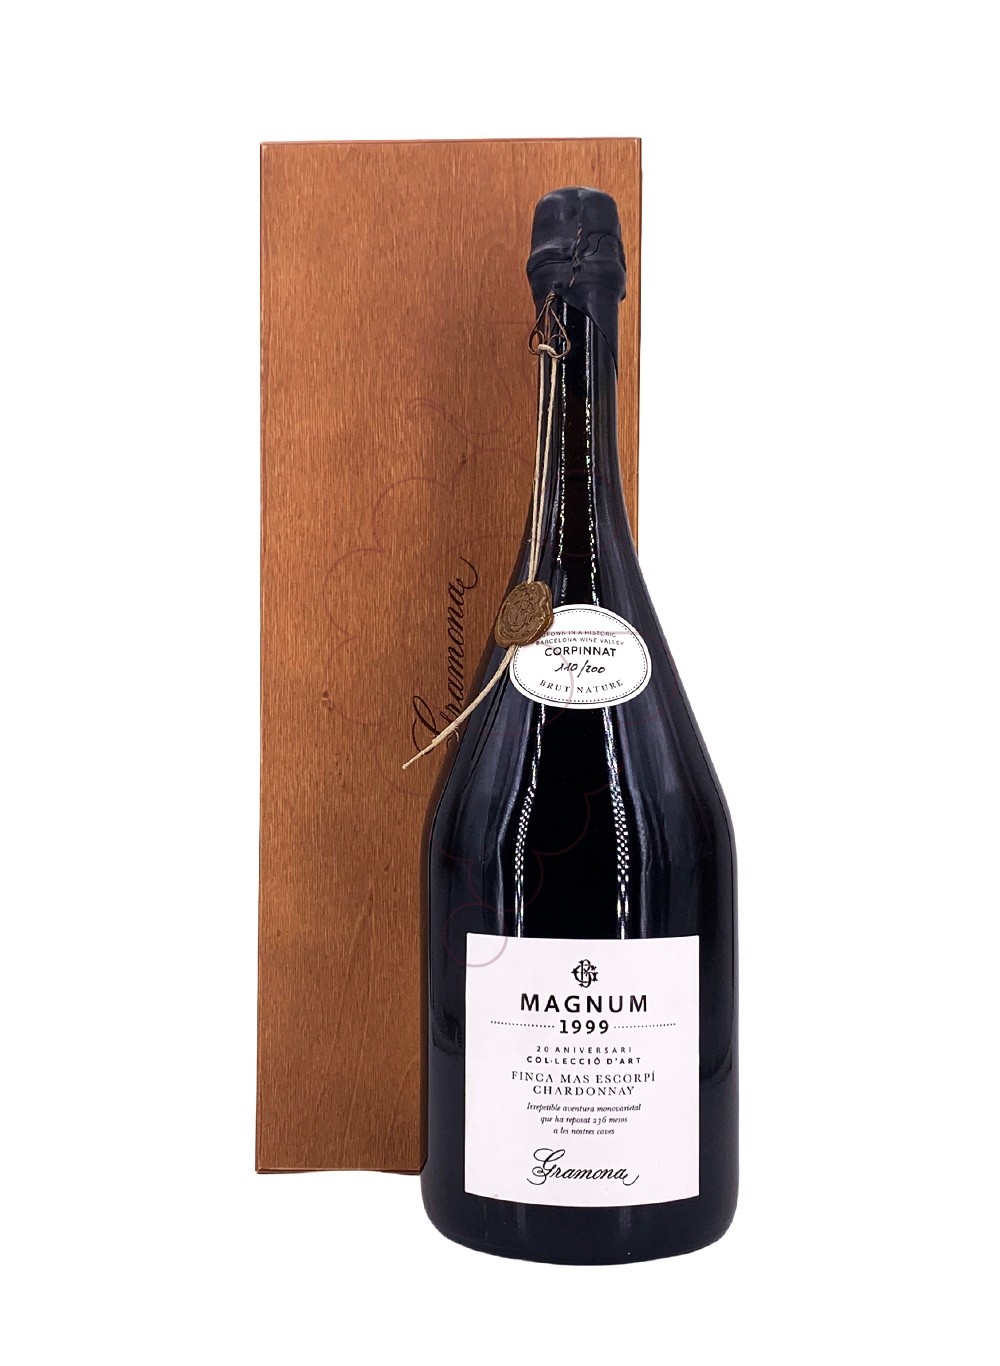 Foto Gramona 20 Aniversari Col·lecció d'Art Magnum vino espumoso